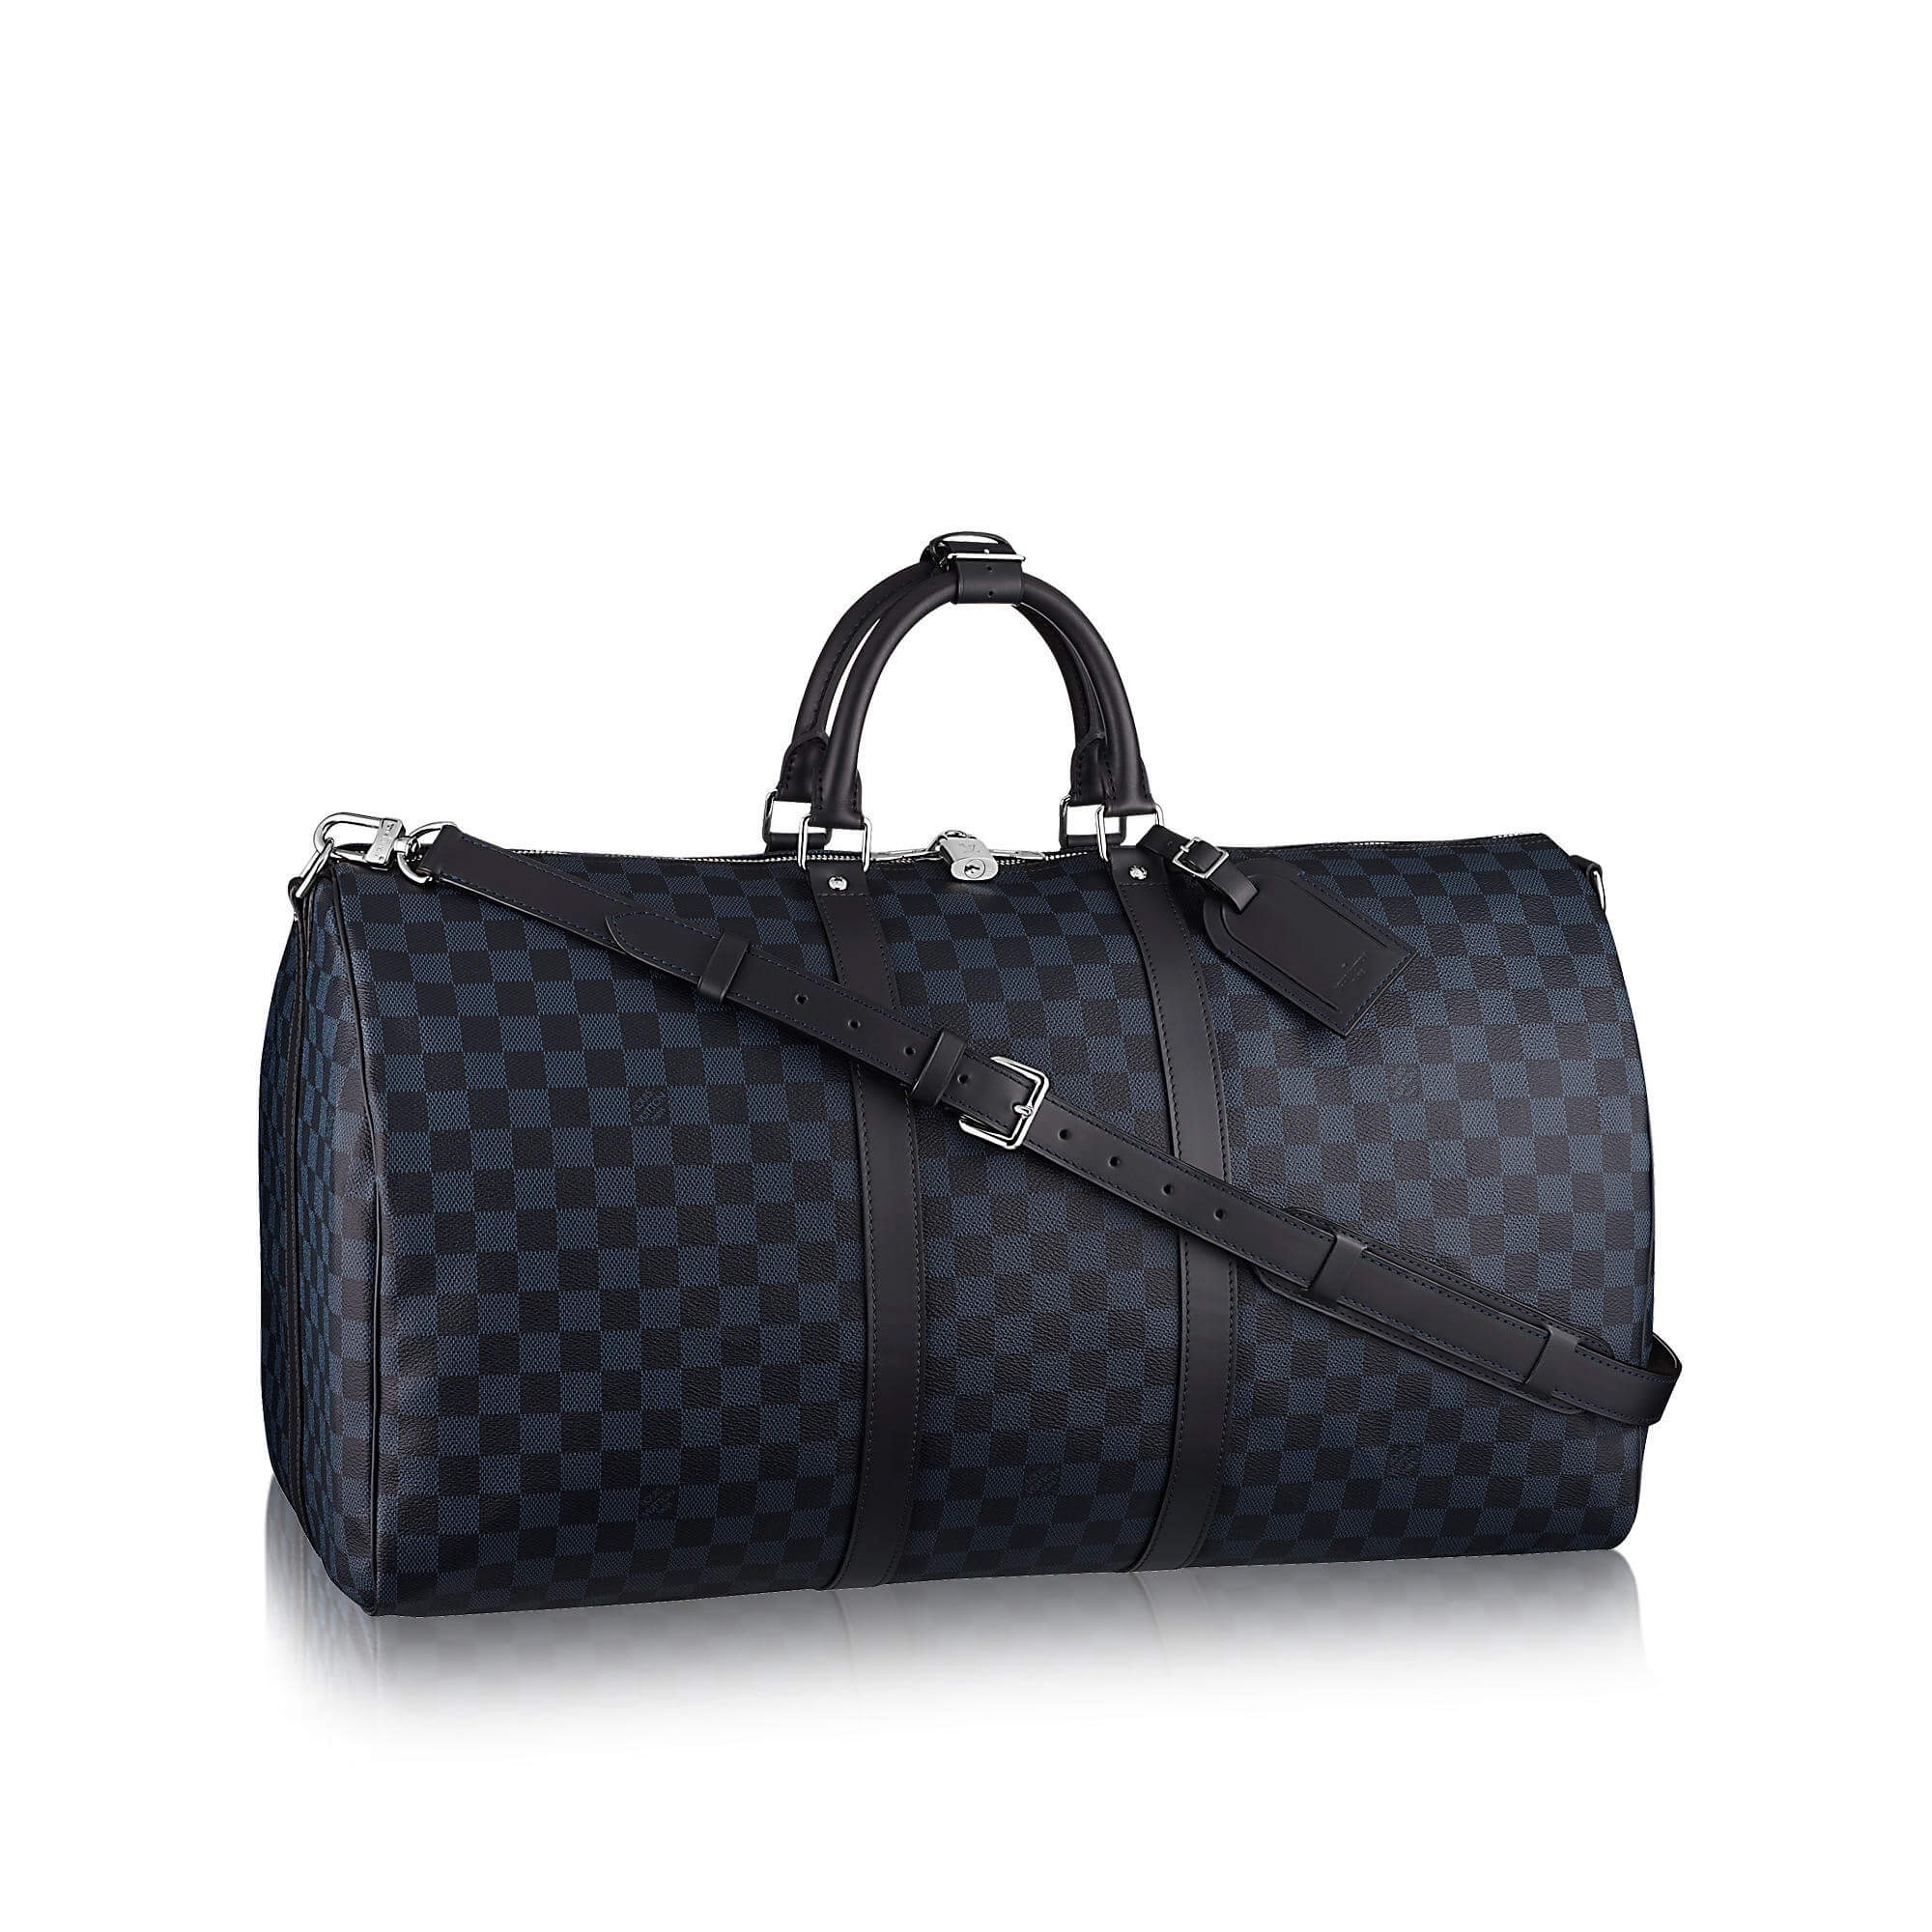 Louis Vuitton Keepall bag